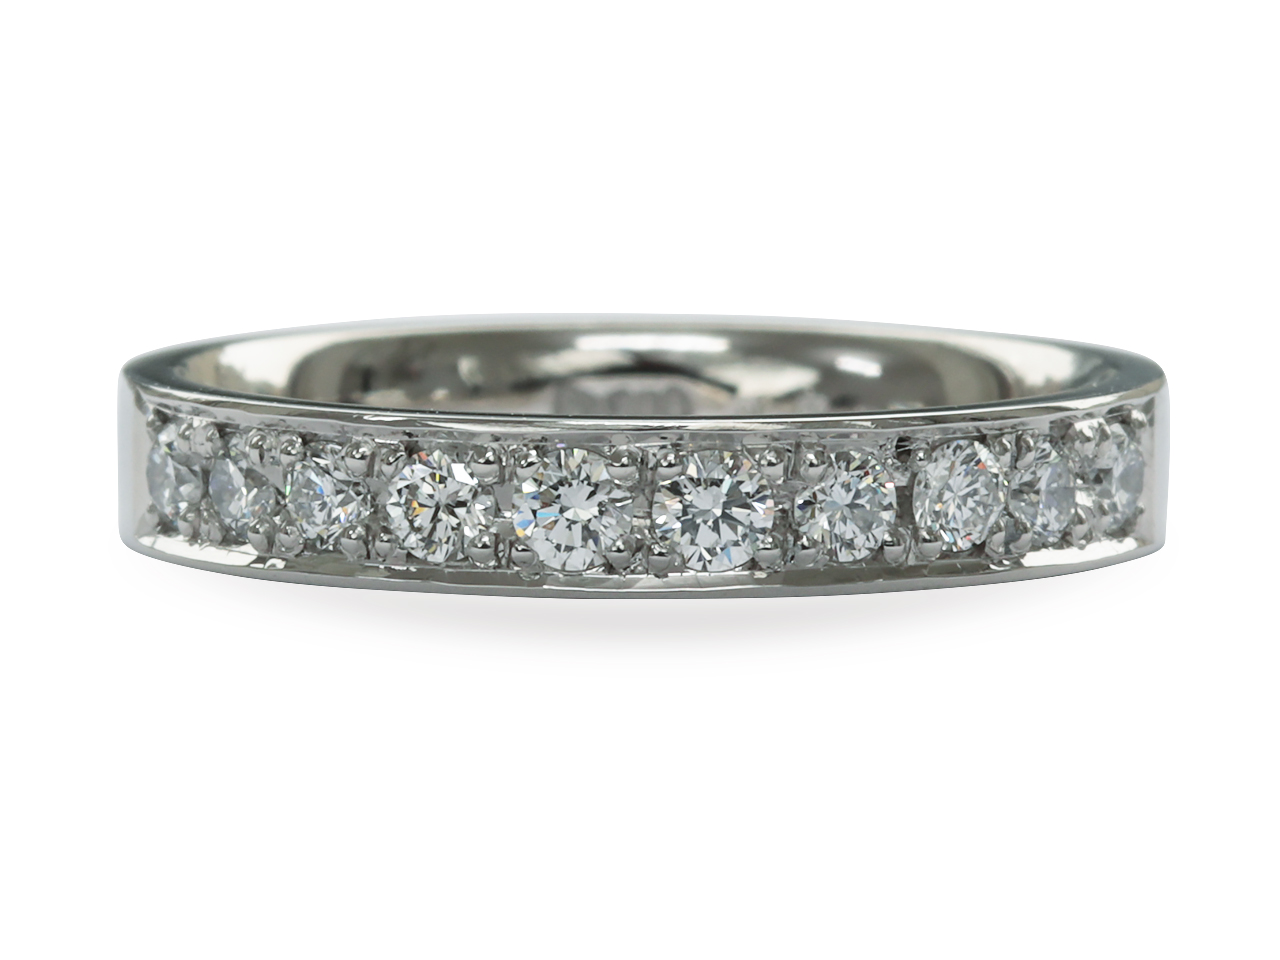 【12034話】結婚10周年記念に結婚指輪と重ね付けできるエタニティリングを